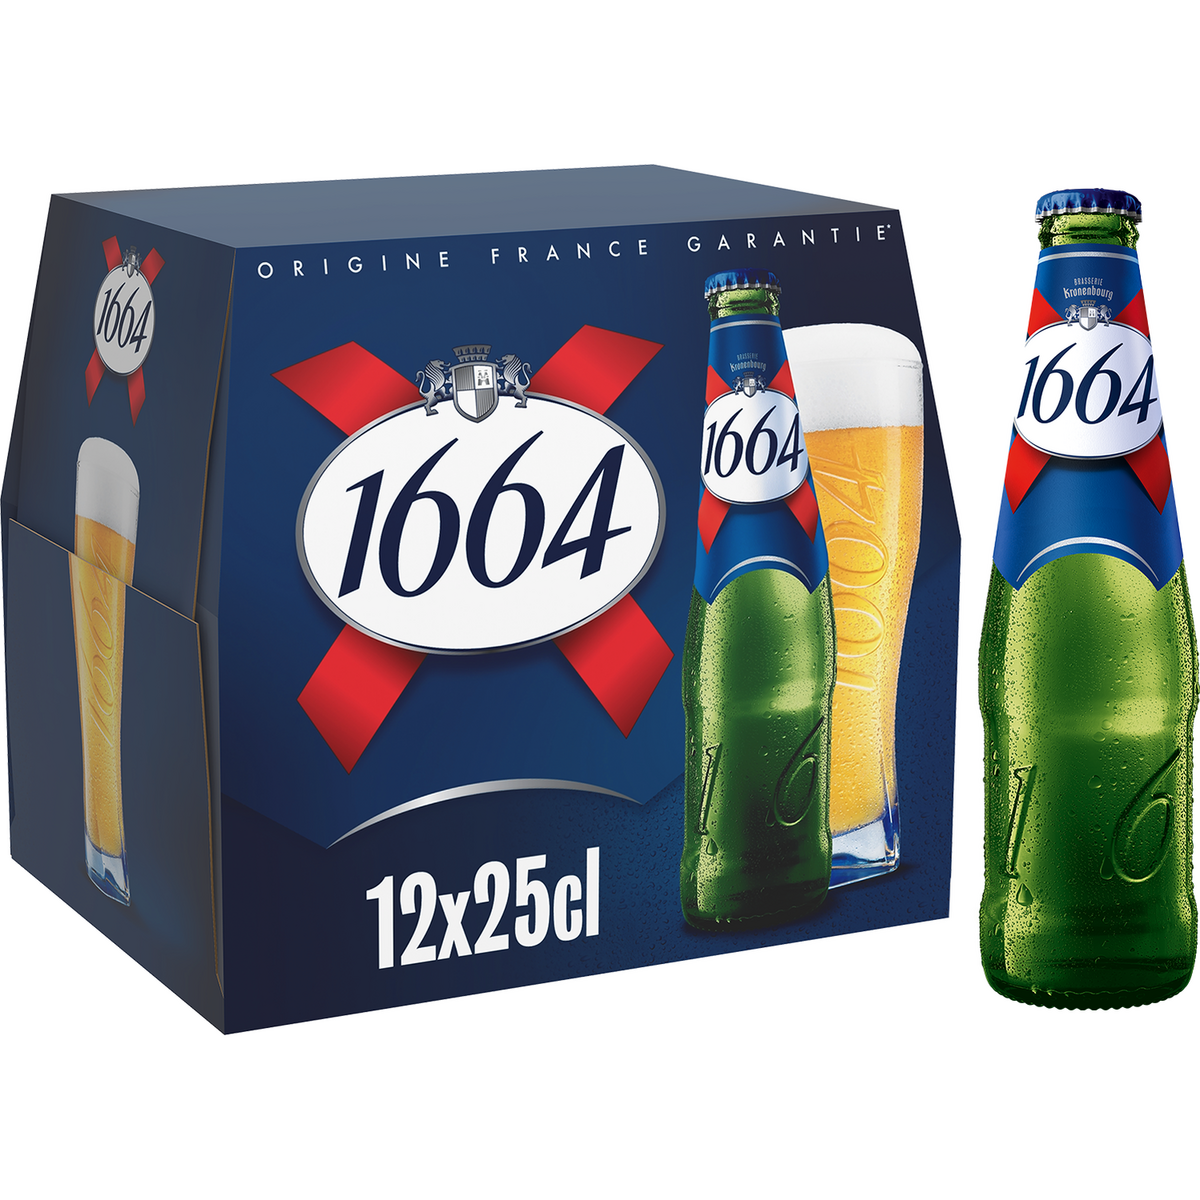 1664 Bière blonde 5,5% bouteilles 12x25cl